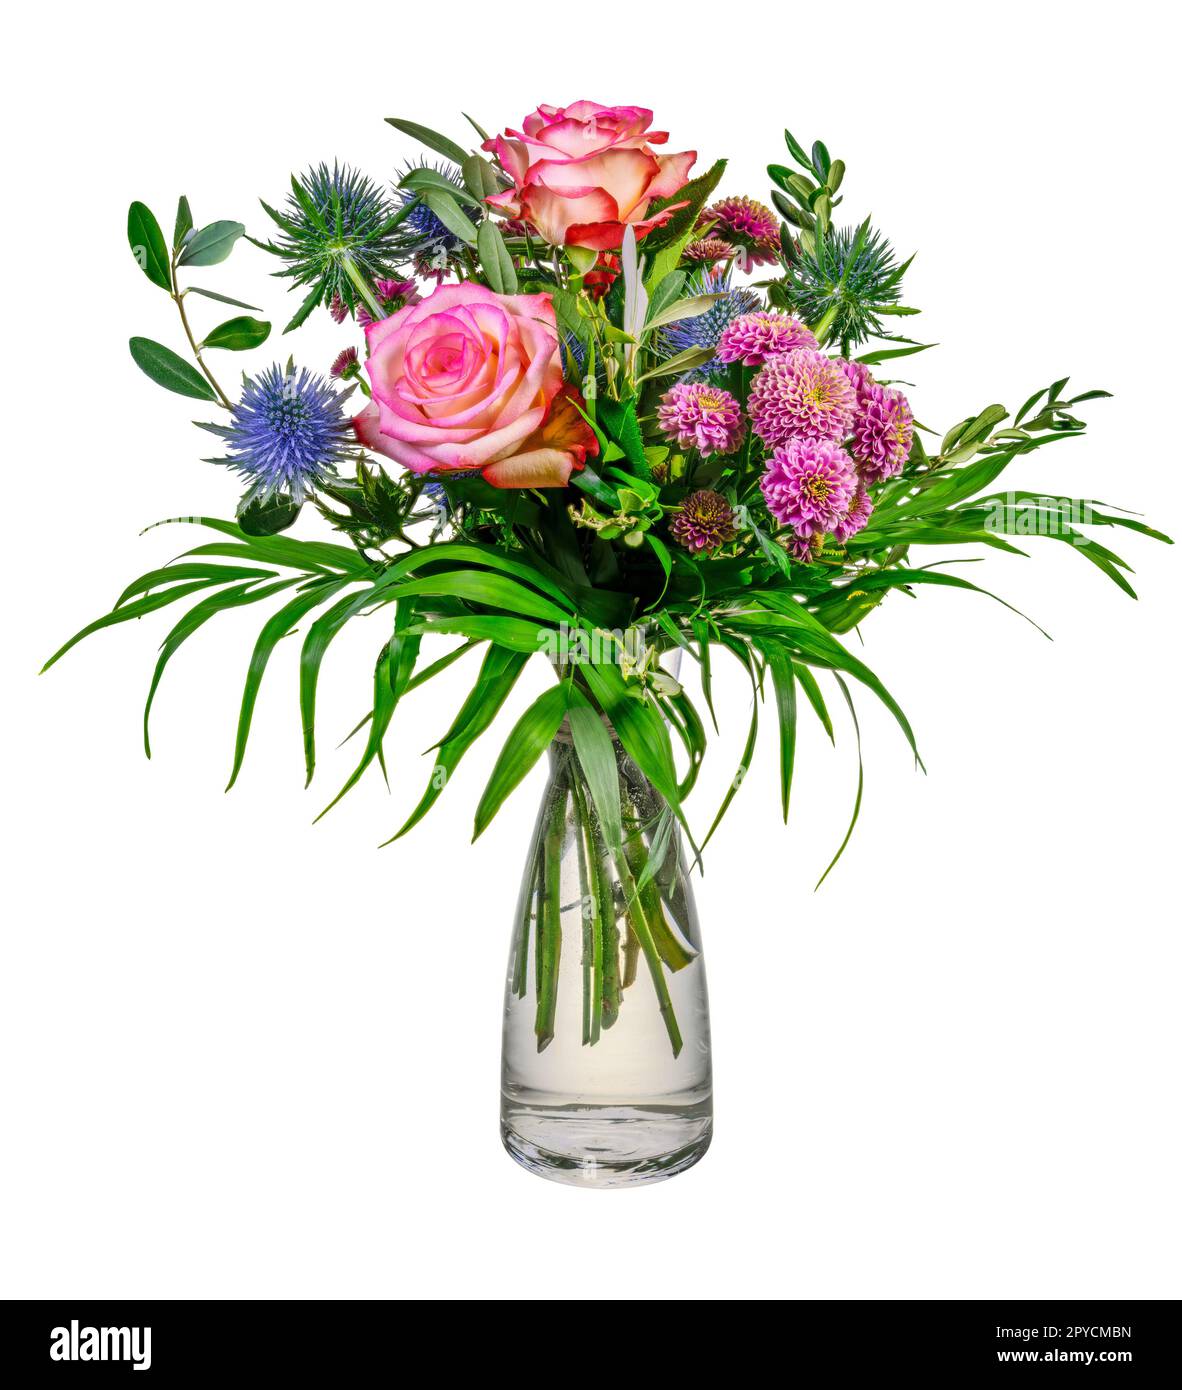 Arrangement de fleurs isolées dans un vase en verre Banque D'Images